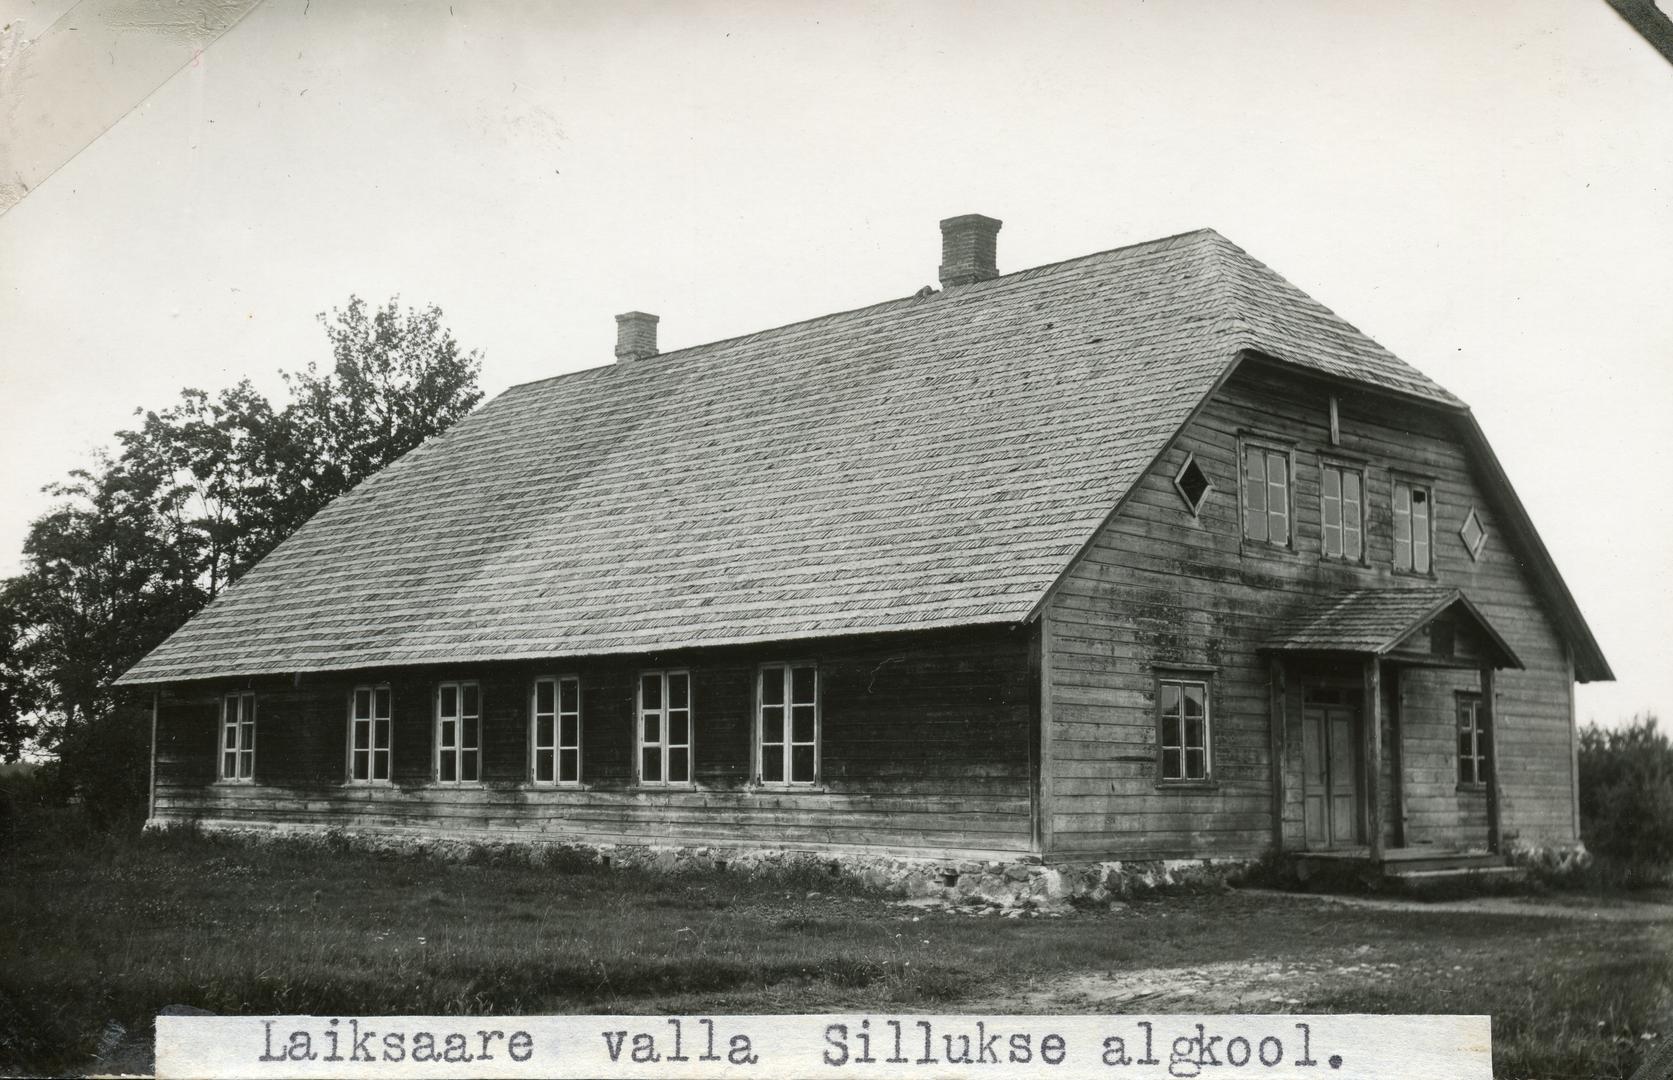 Laiksaare municipality Sillukse Algkooli building